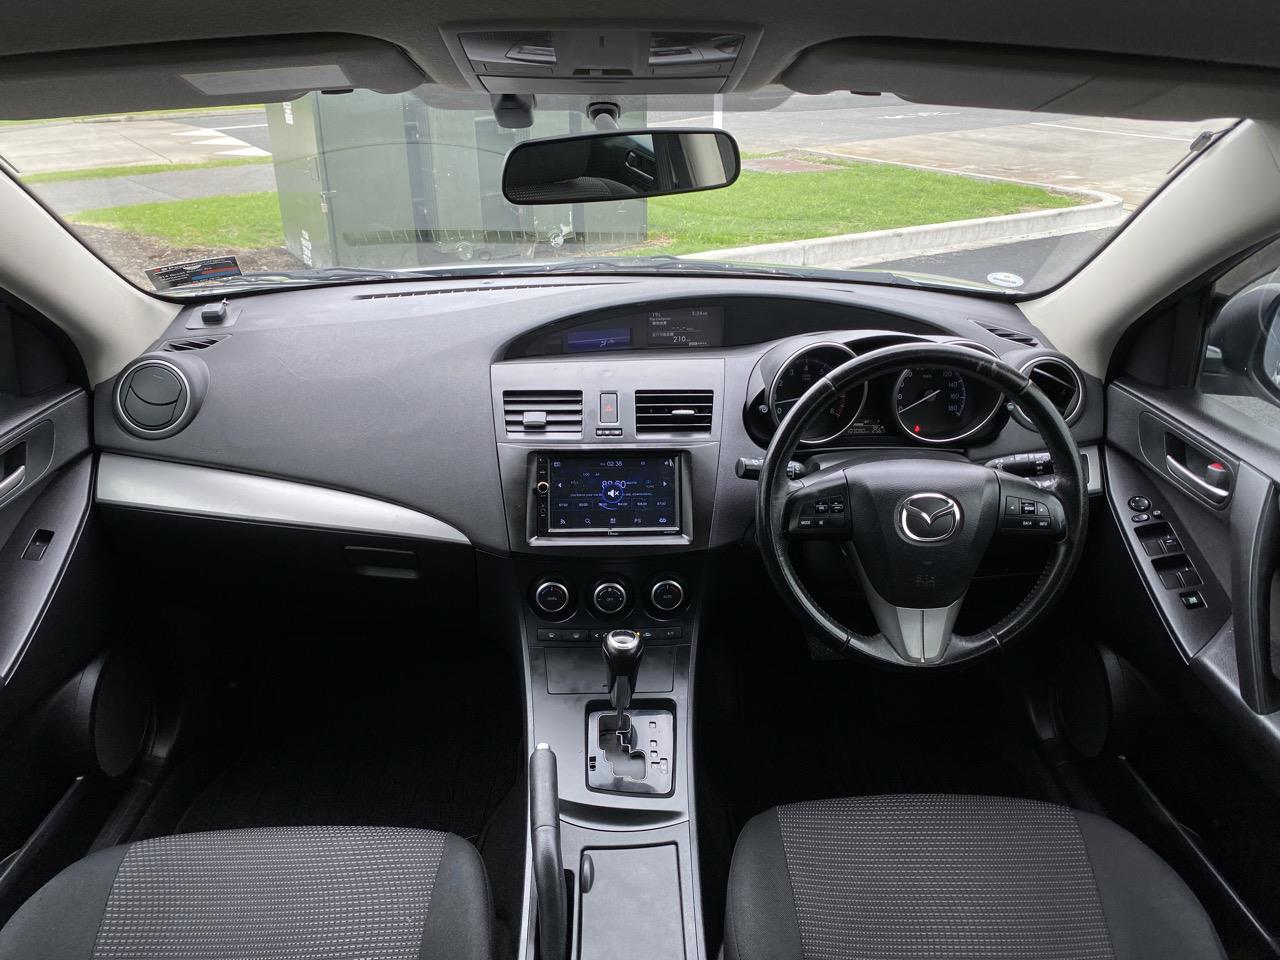 2013 Mazda Axela